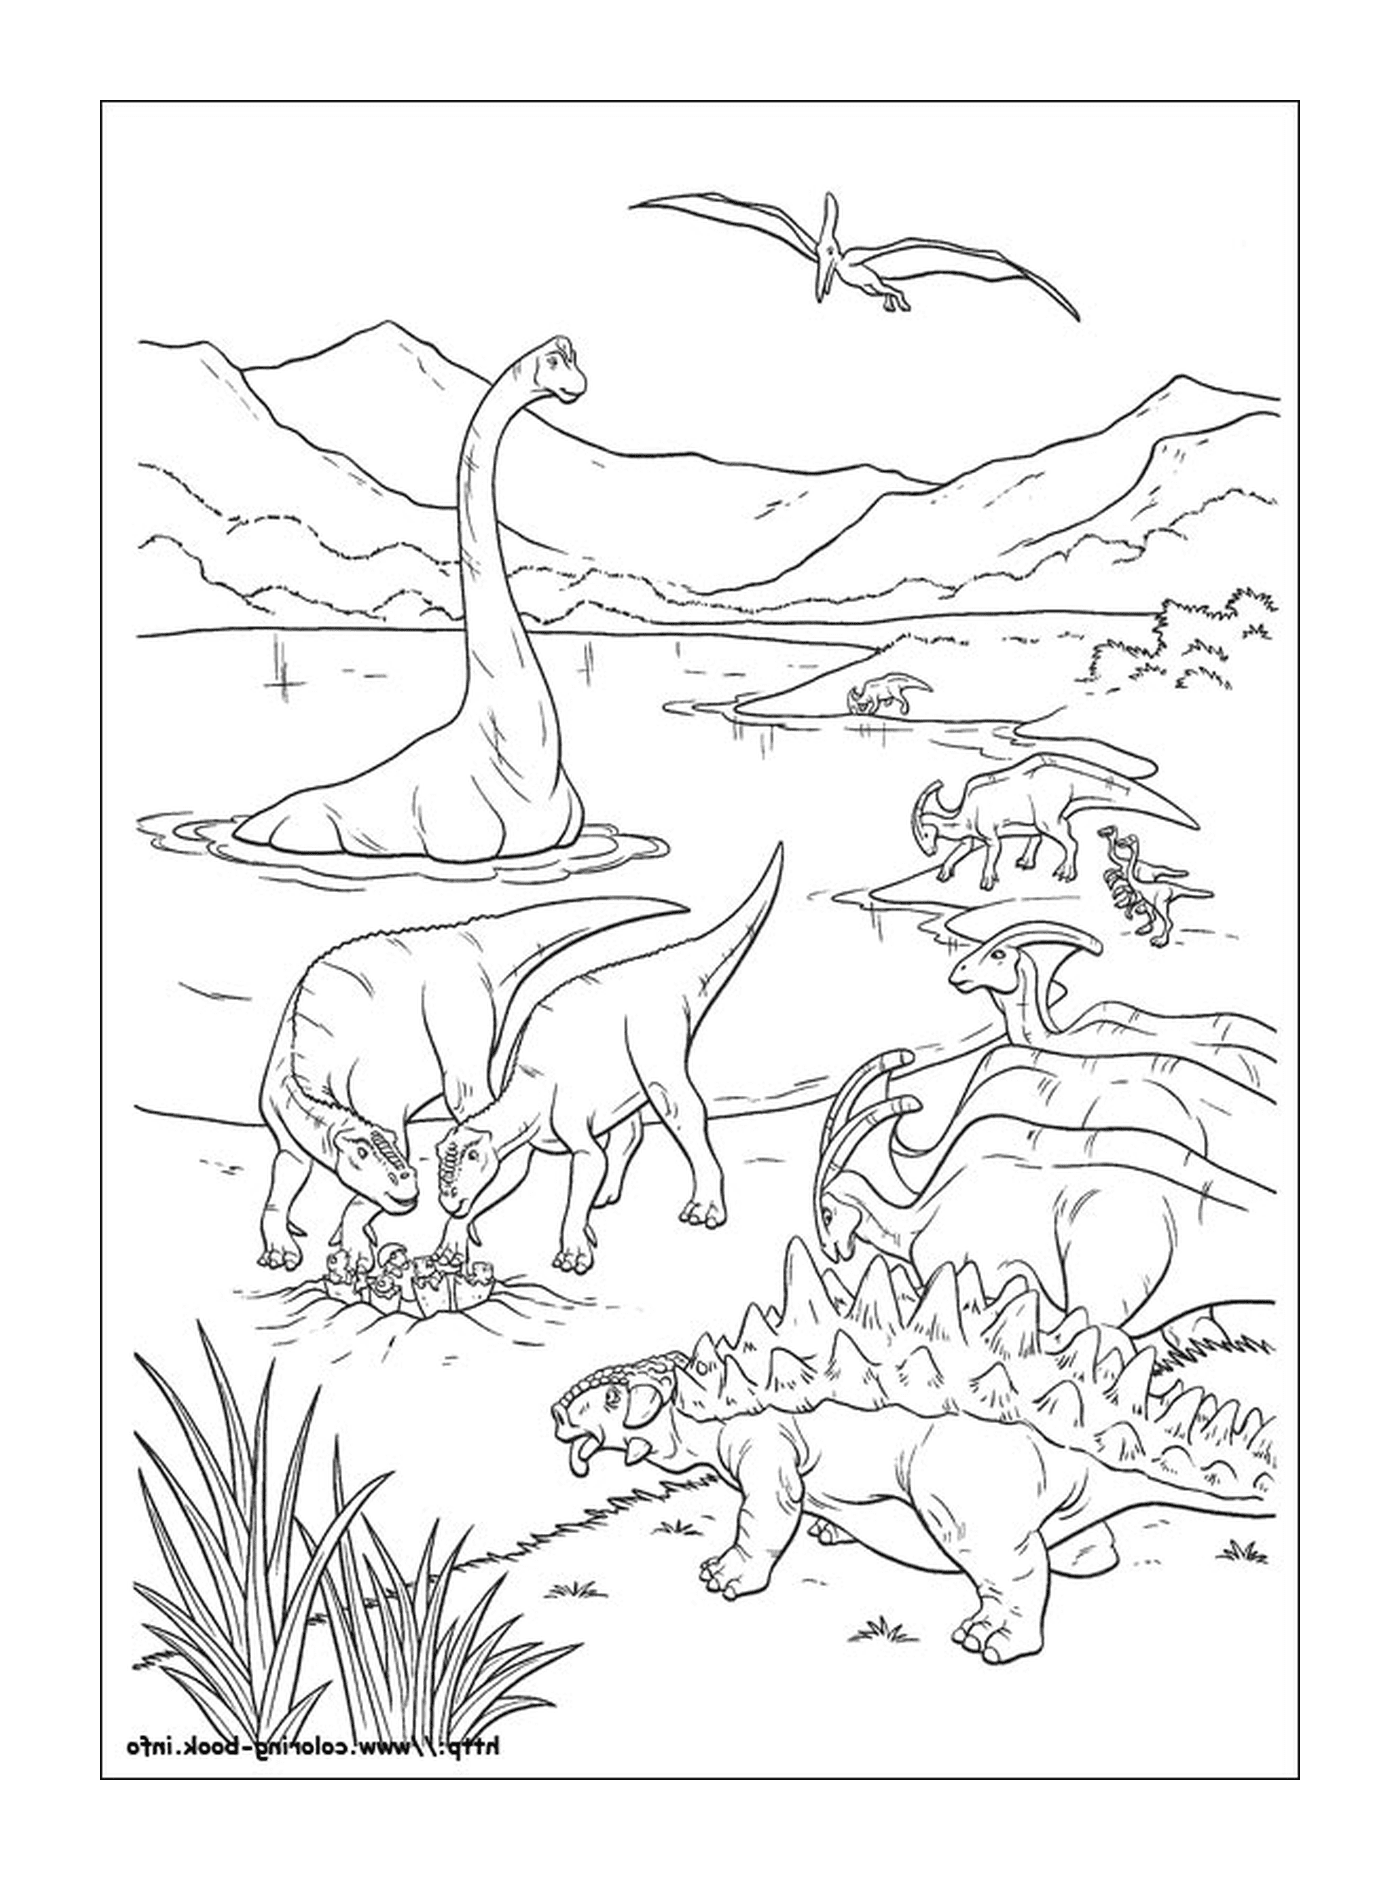  Un gruppo di dinosauri in acqua 